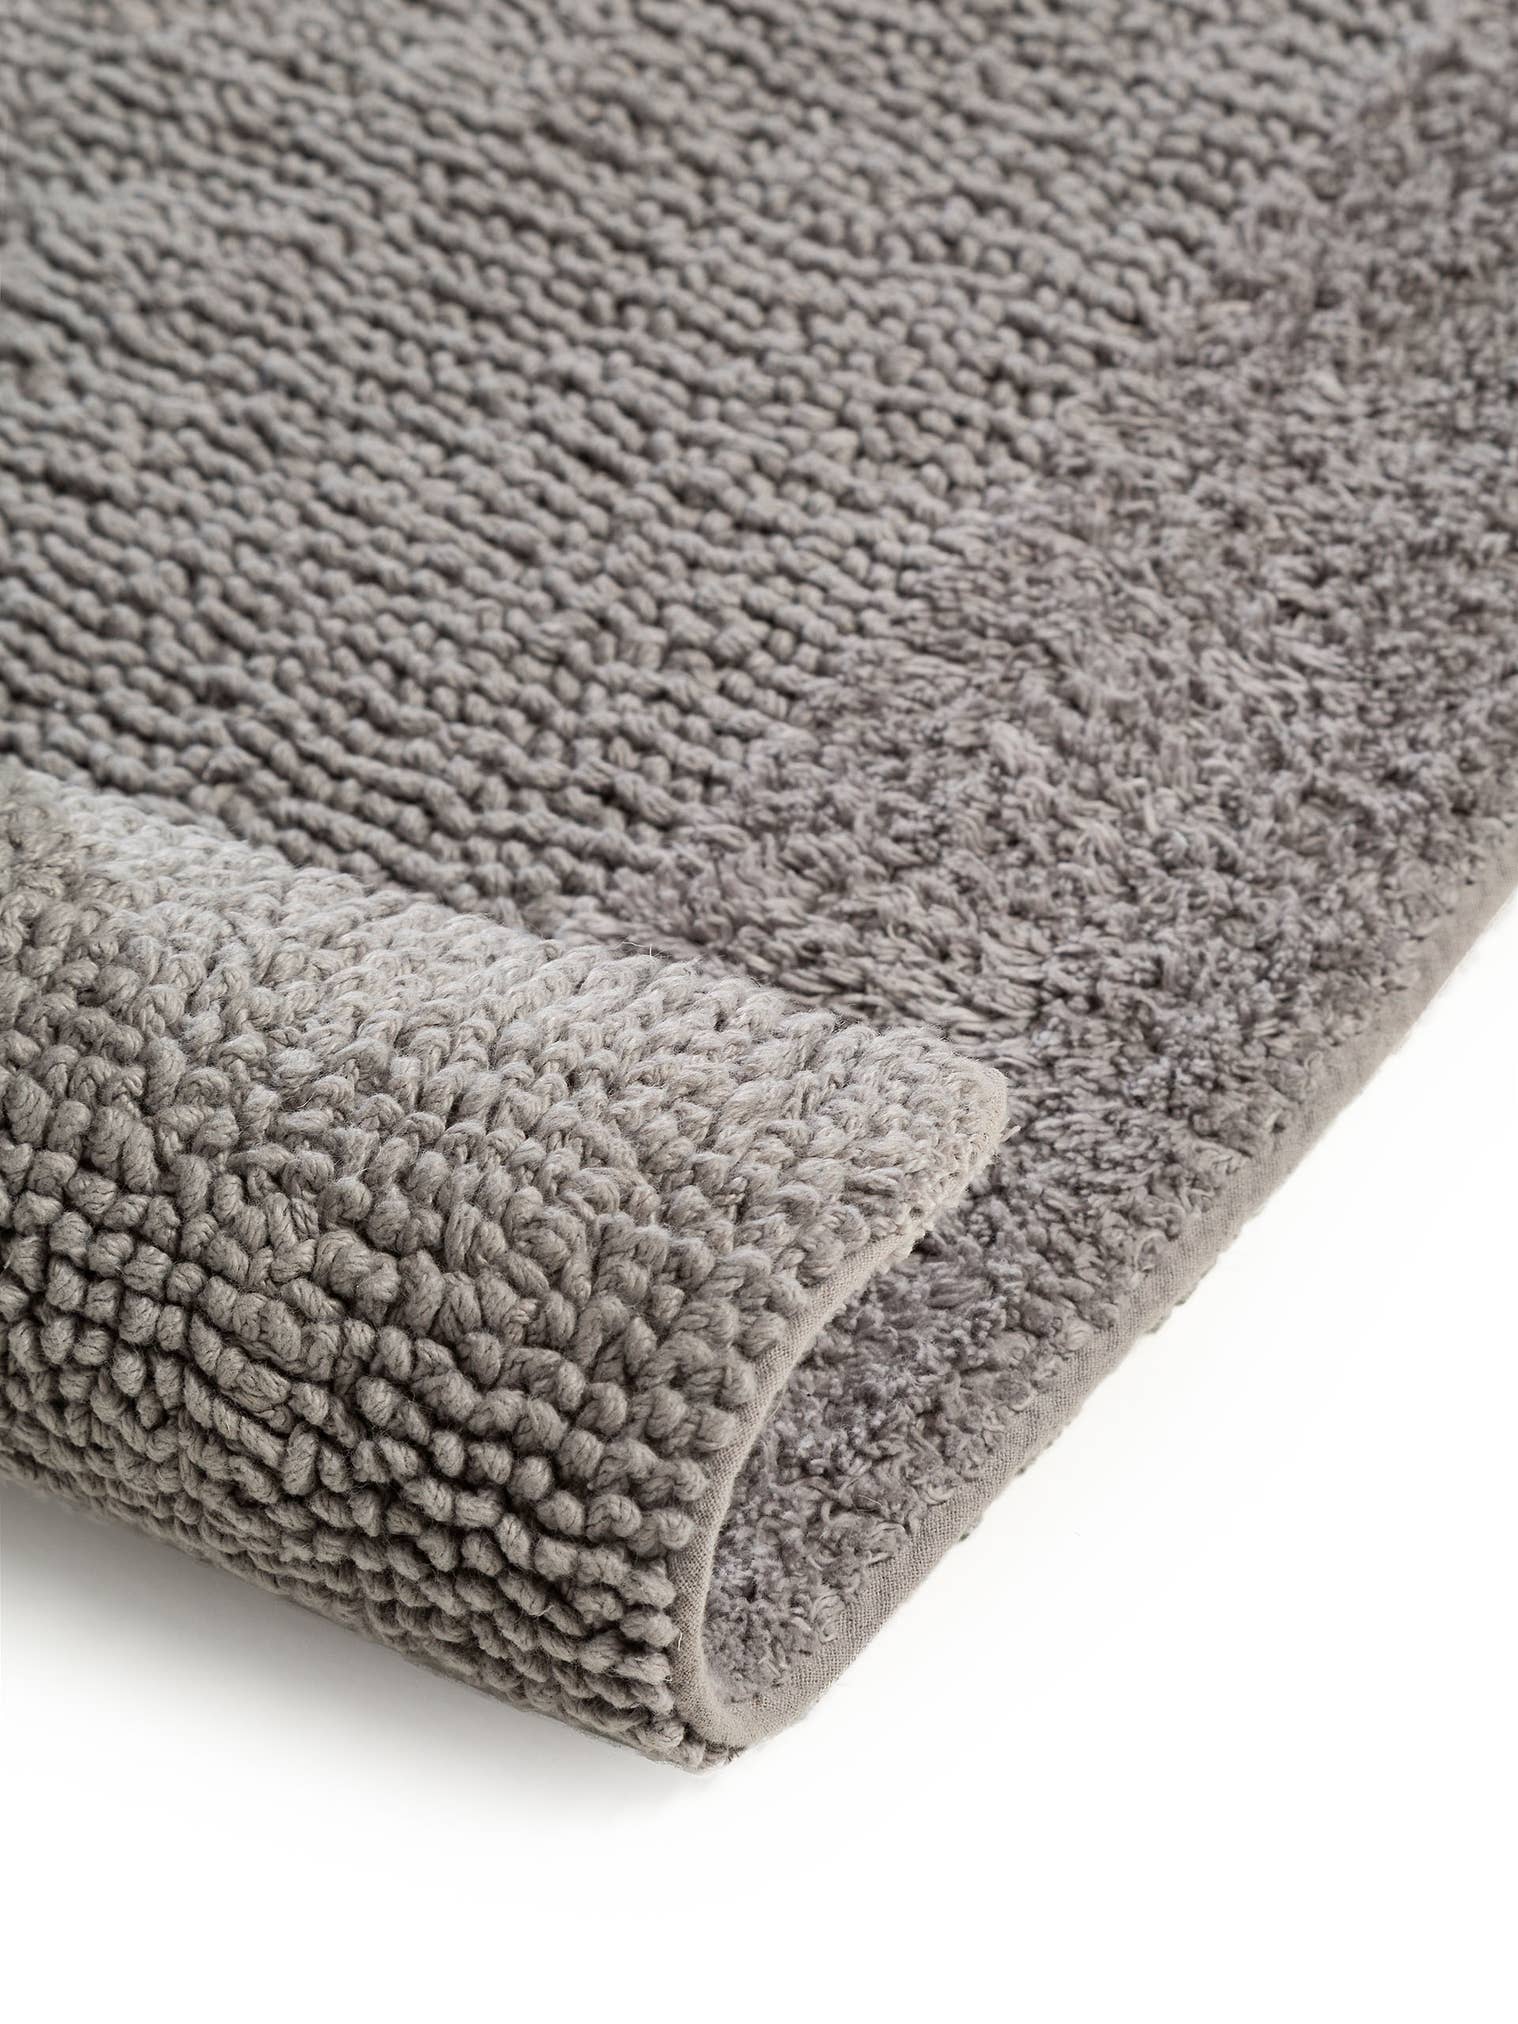 Teppich aus 100% Baumwolle in Grau mit 6 bis 10 mm hohem Flor von benuta Nest